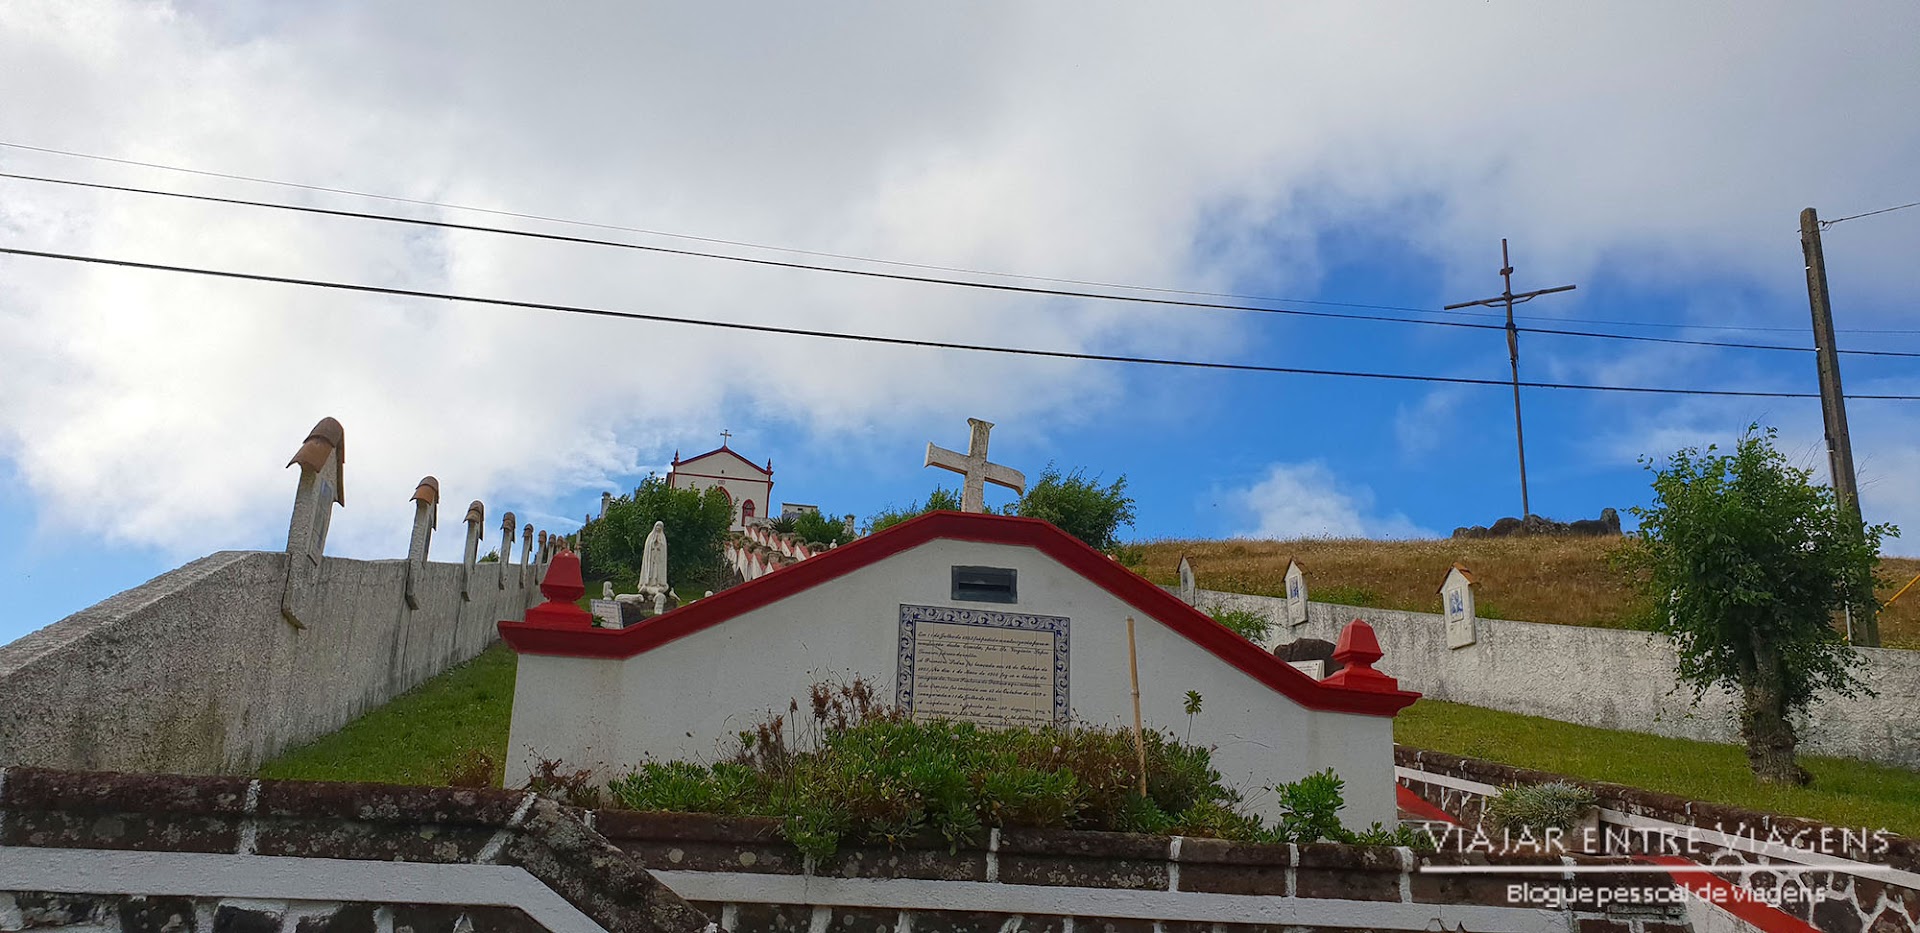 VISITAR SANTA MARIA - O segredo mais bem escondido dos Açores